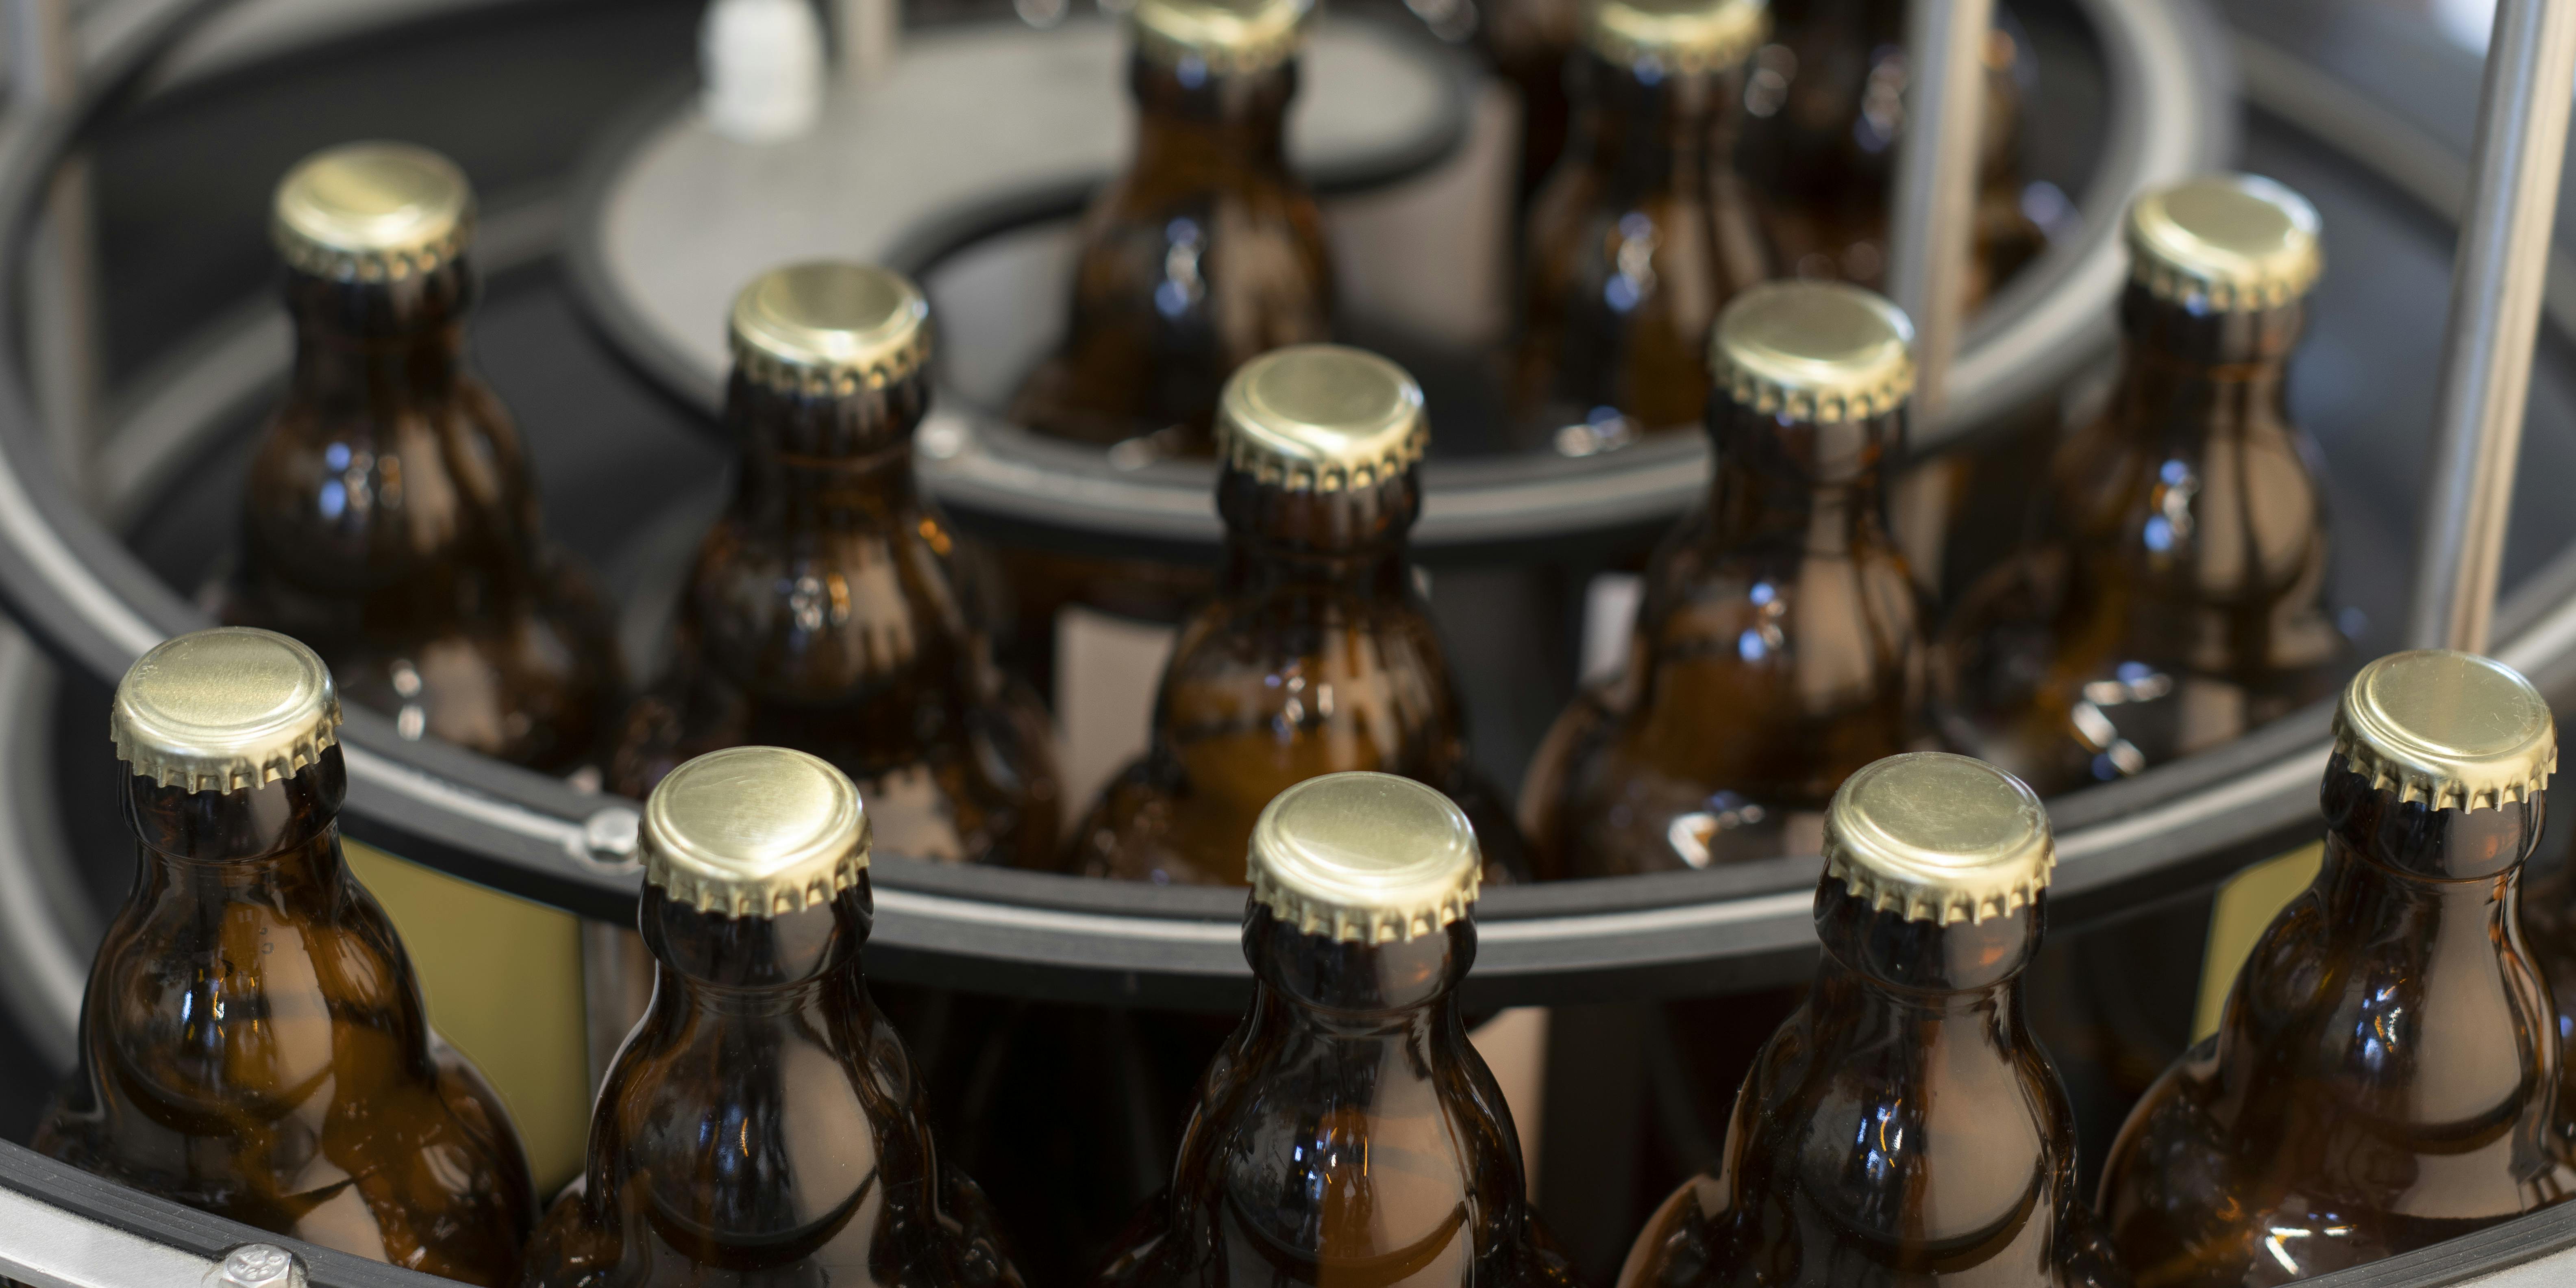 Tavola accumulo in uscita con bottiglie birra